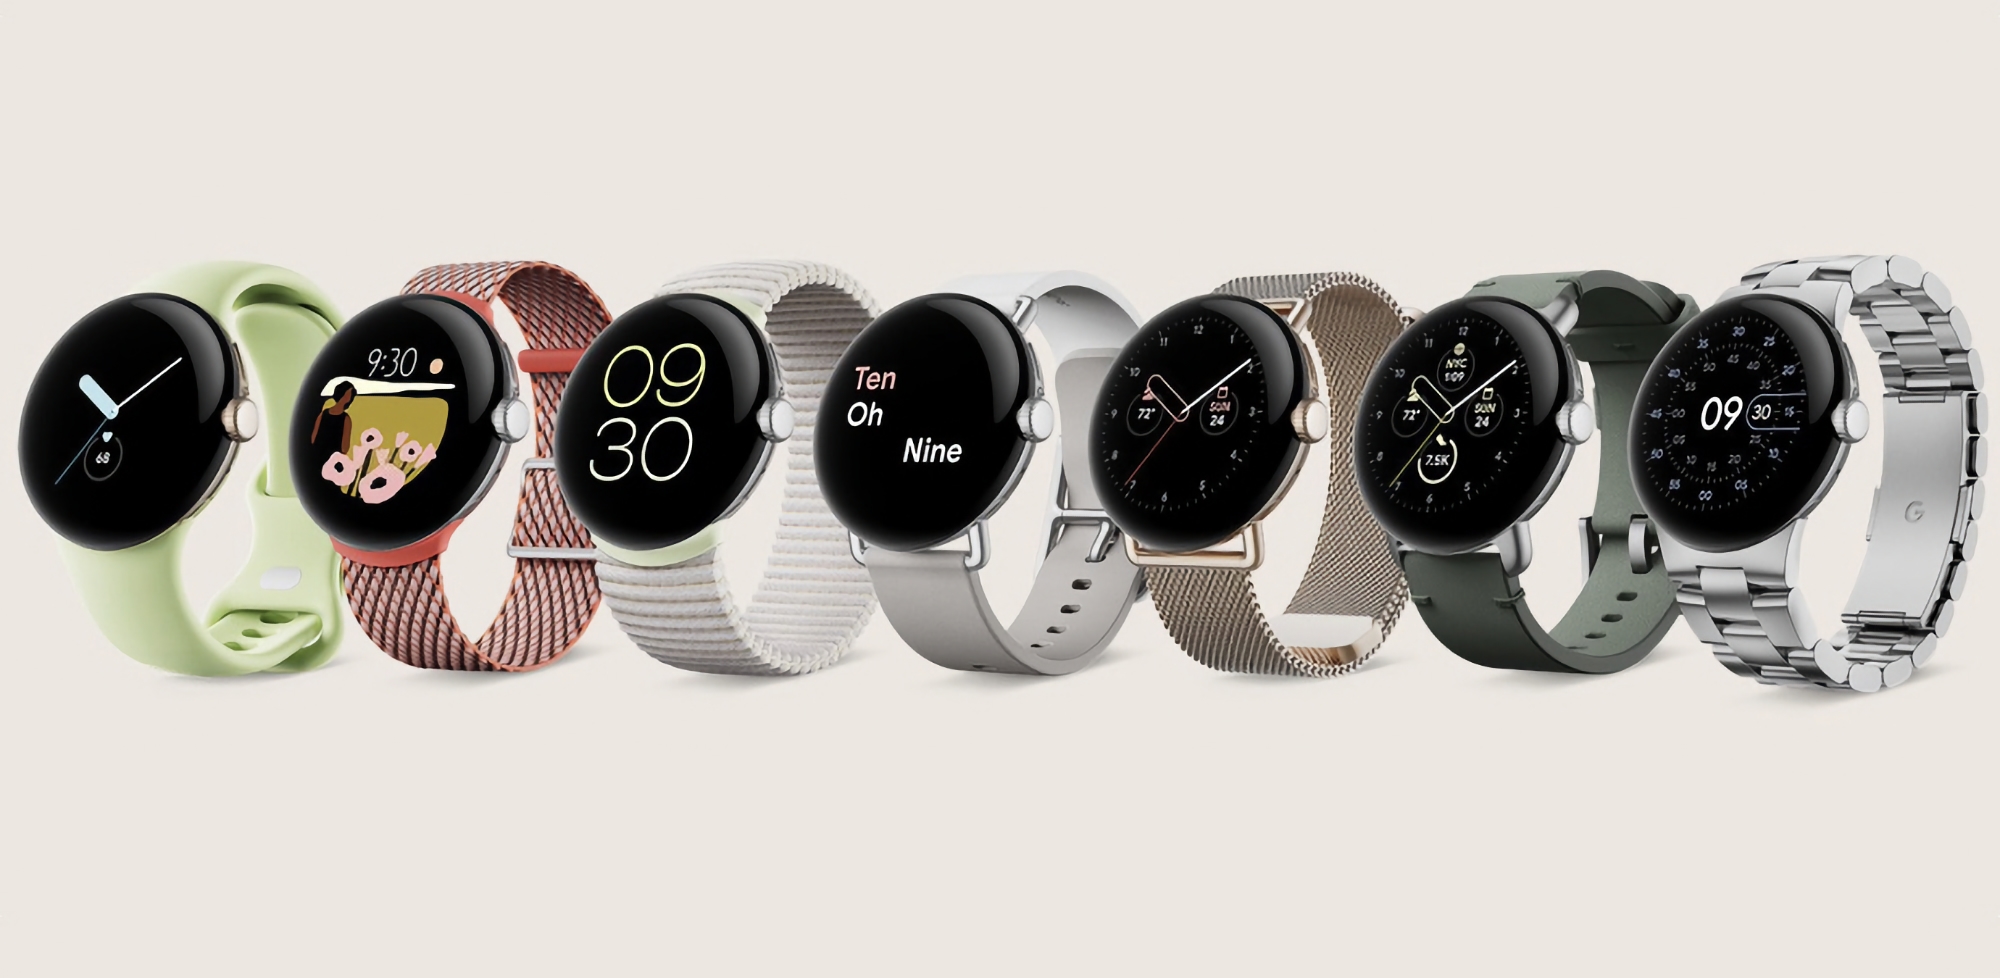 Oryginalny zegarek Google Pixel Watch otrzymał nowe funkcje wraz z aktualizacją oprogramowania